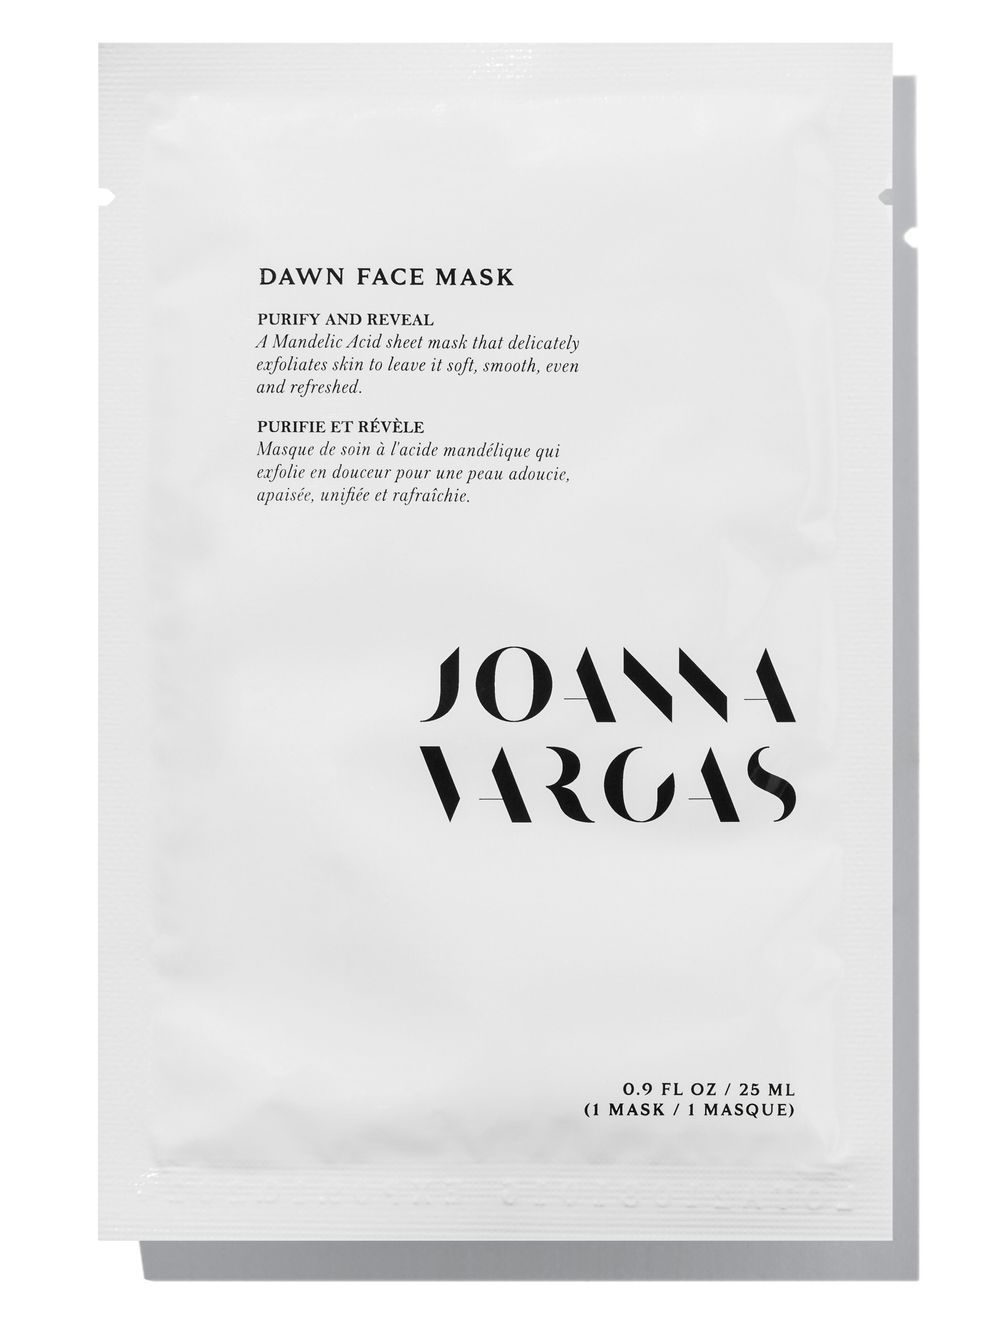 JOANNA VARGAS DAWN FACE MASK 5 SHEETS